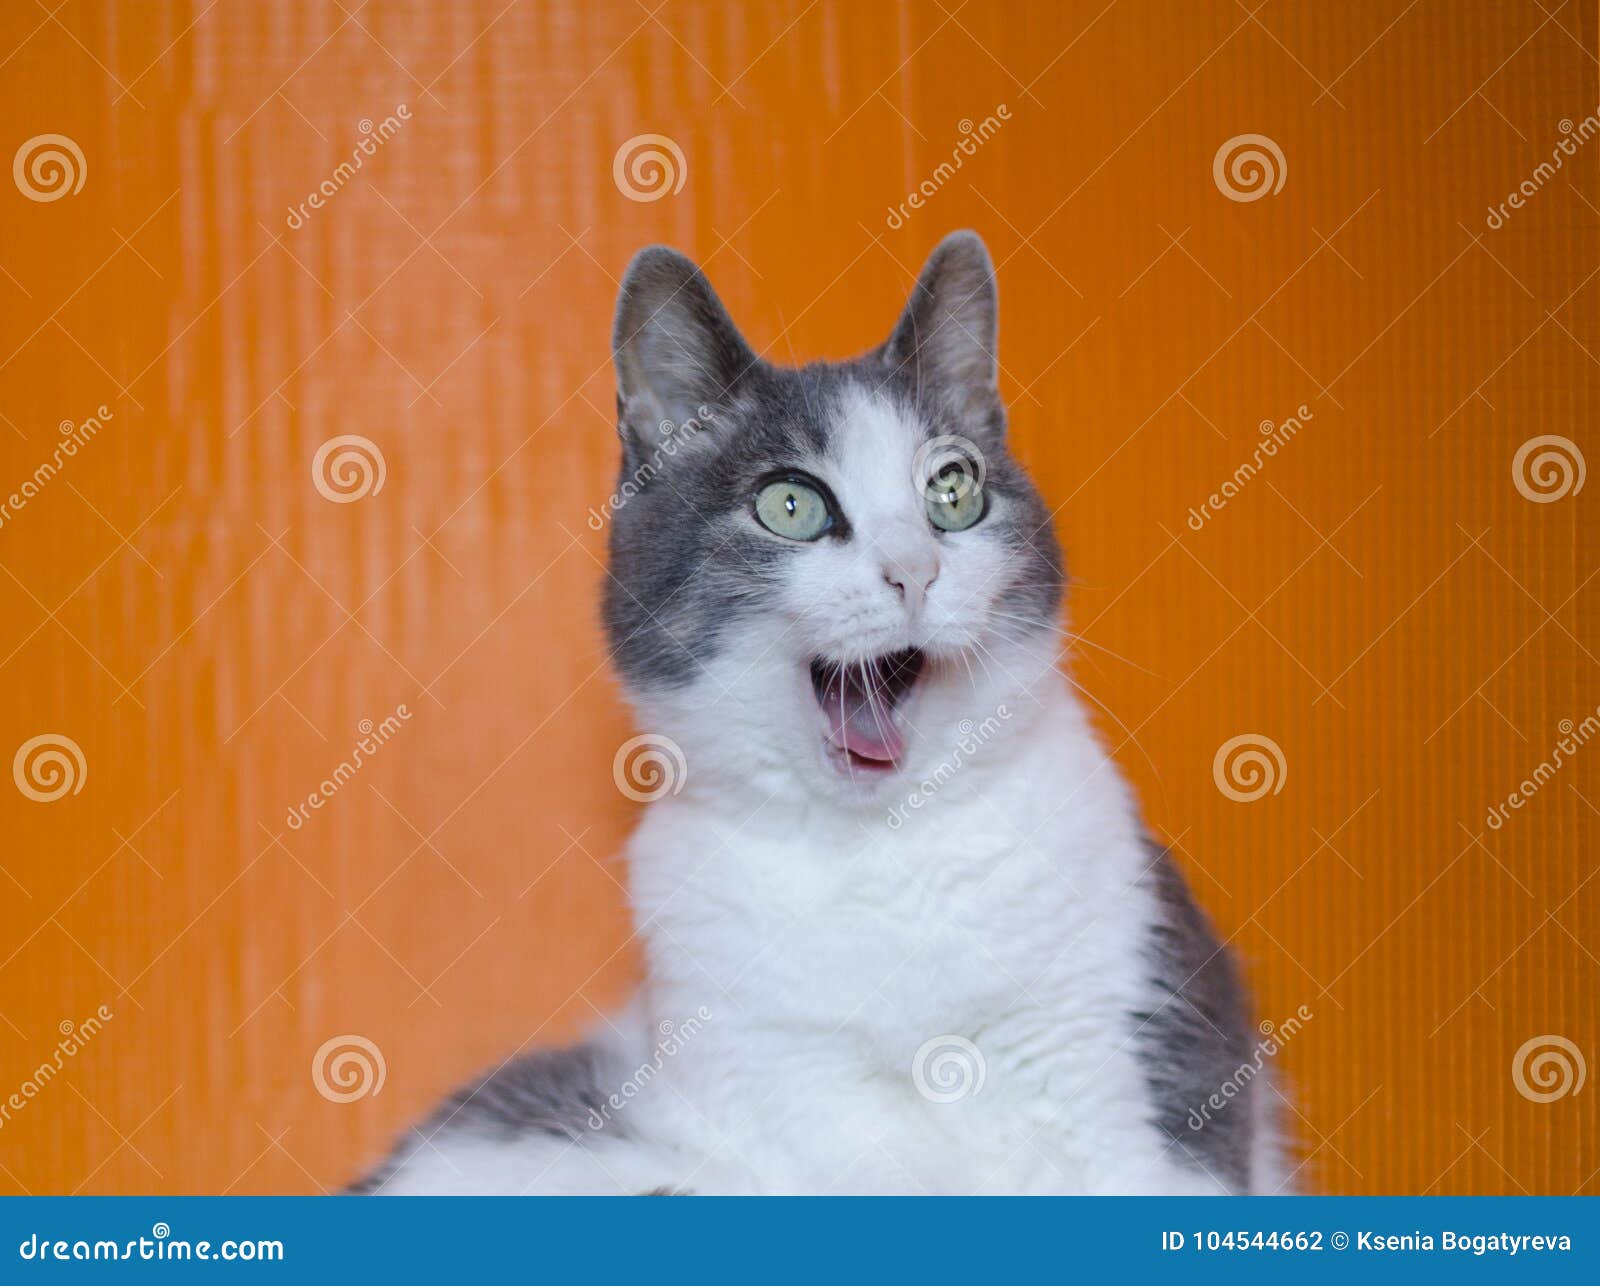 funny surprised cat